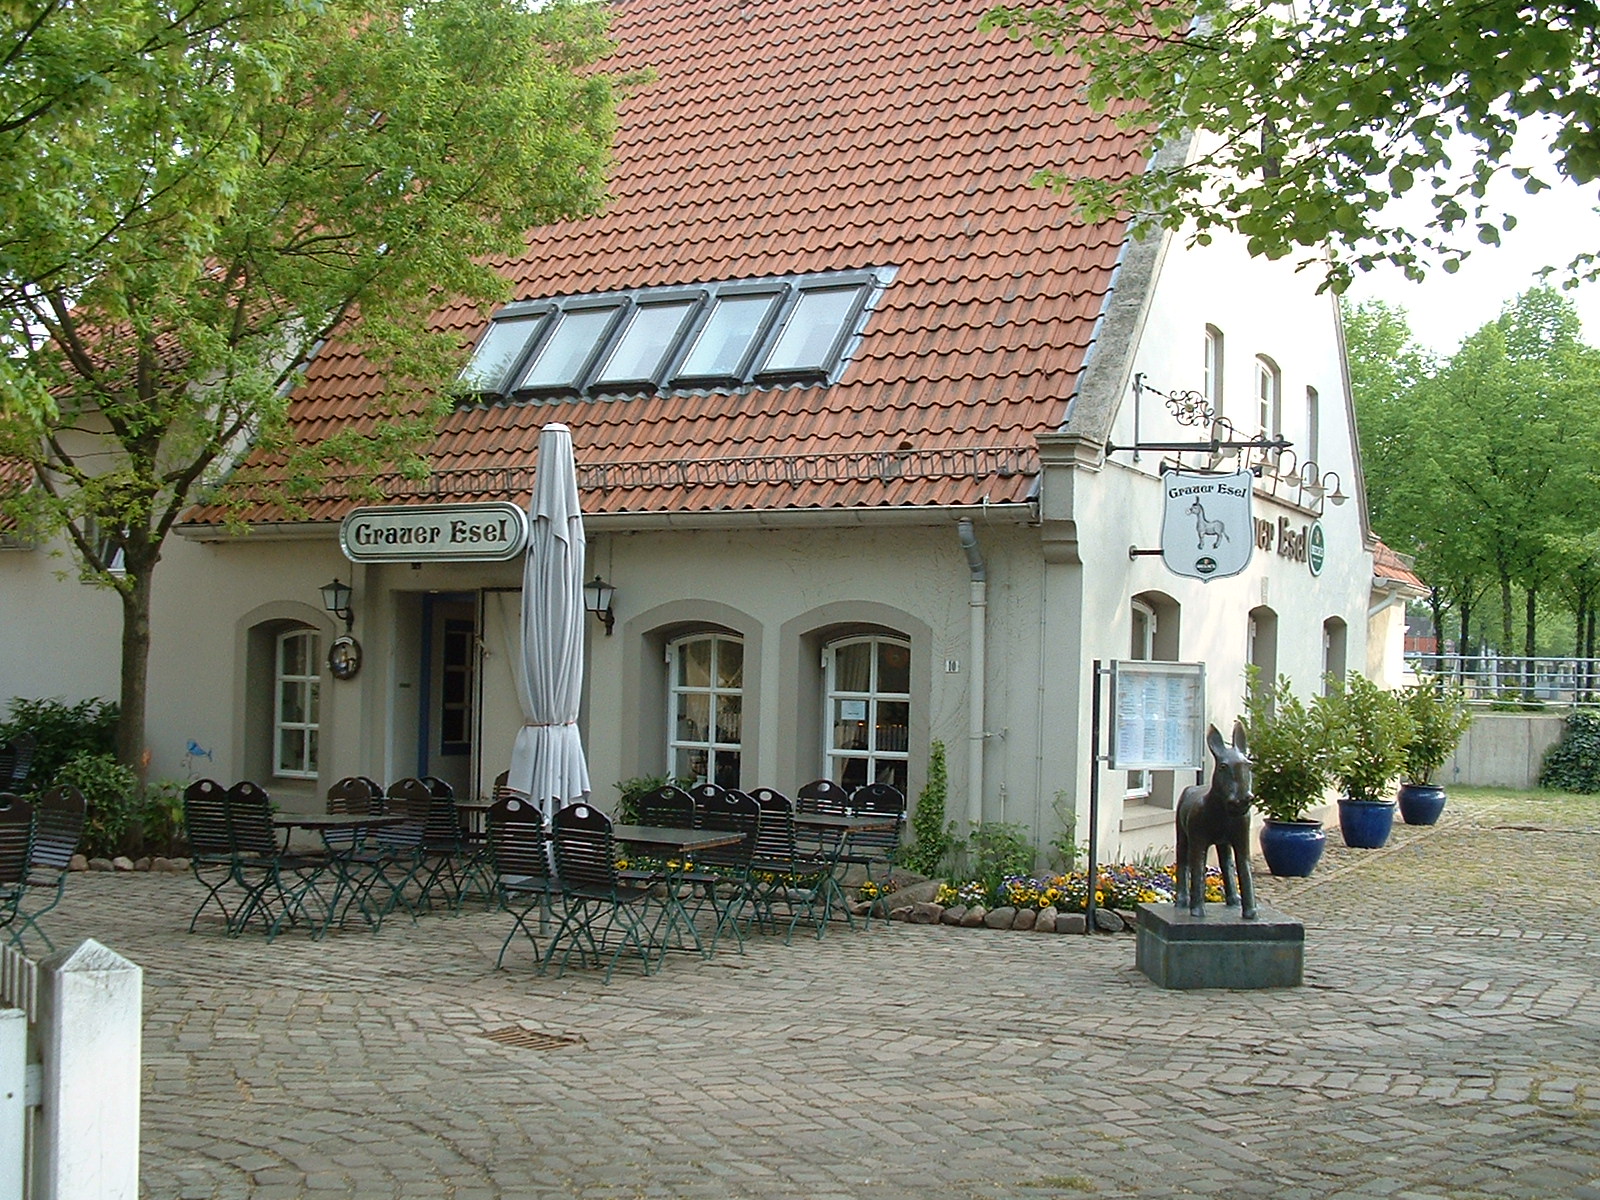 Grauer Esel - Restaurant in Vegesack am Hafen